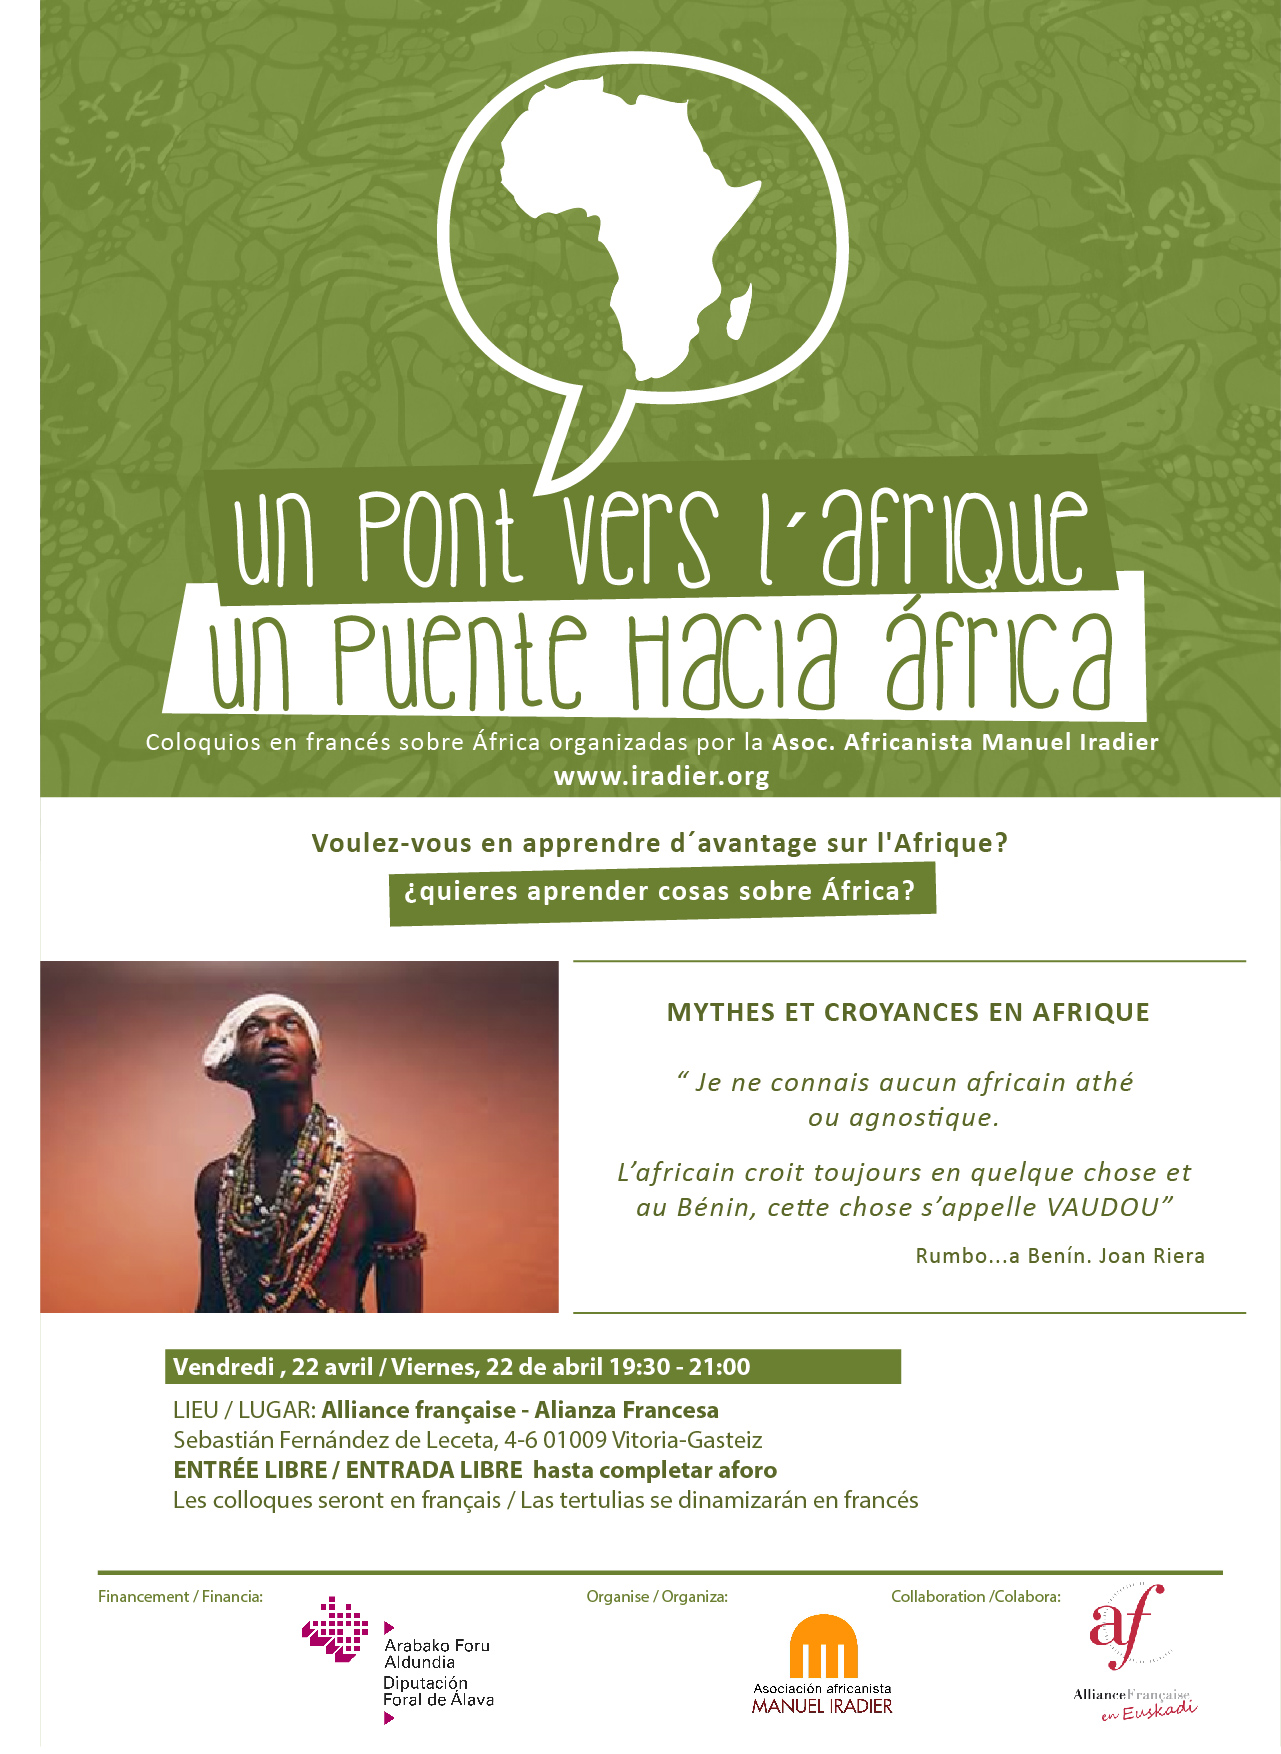 SEGUNDA TERTULIA UN PUENTE HACIA ÁFRICA: MYTHES ET CROYANCES EN AFRIQUE